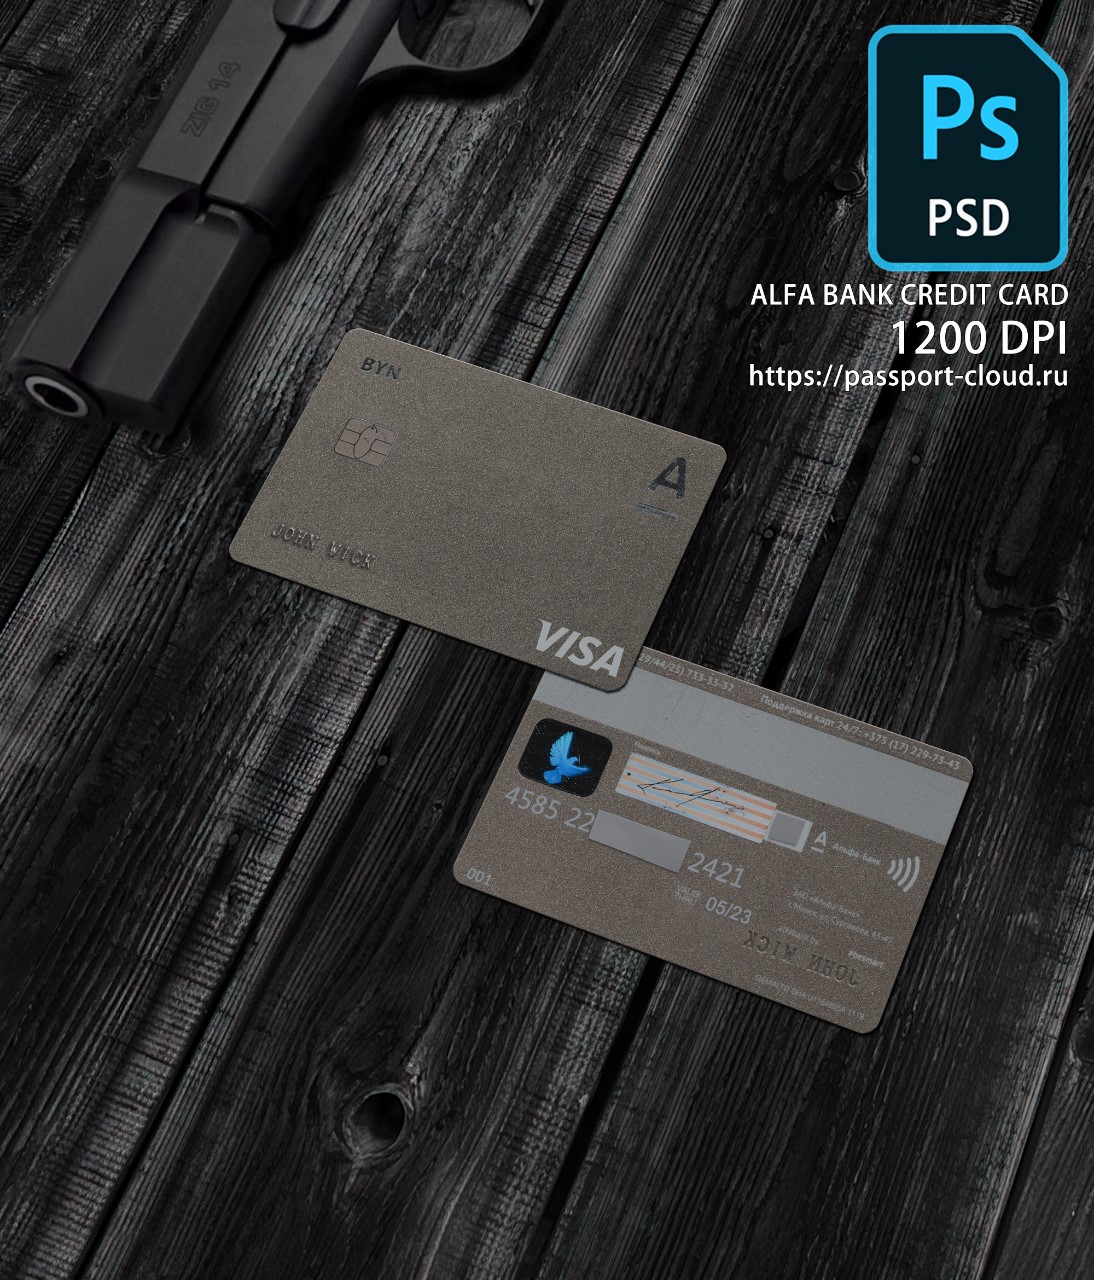 Alfa Bank Credit Card PSD1